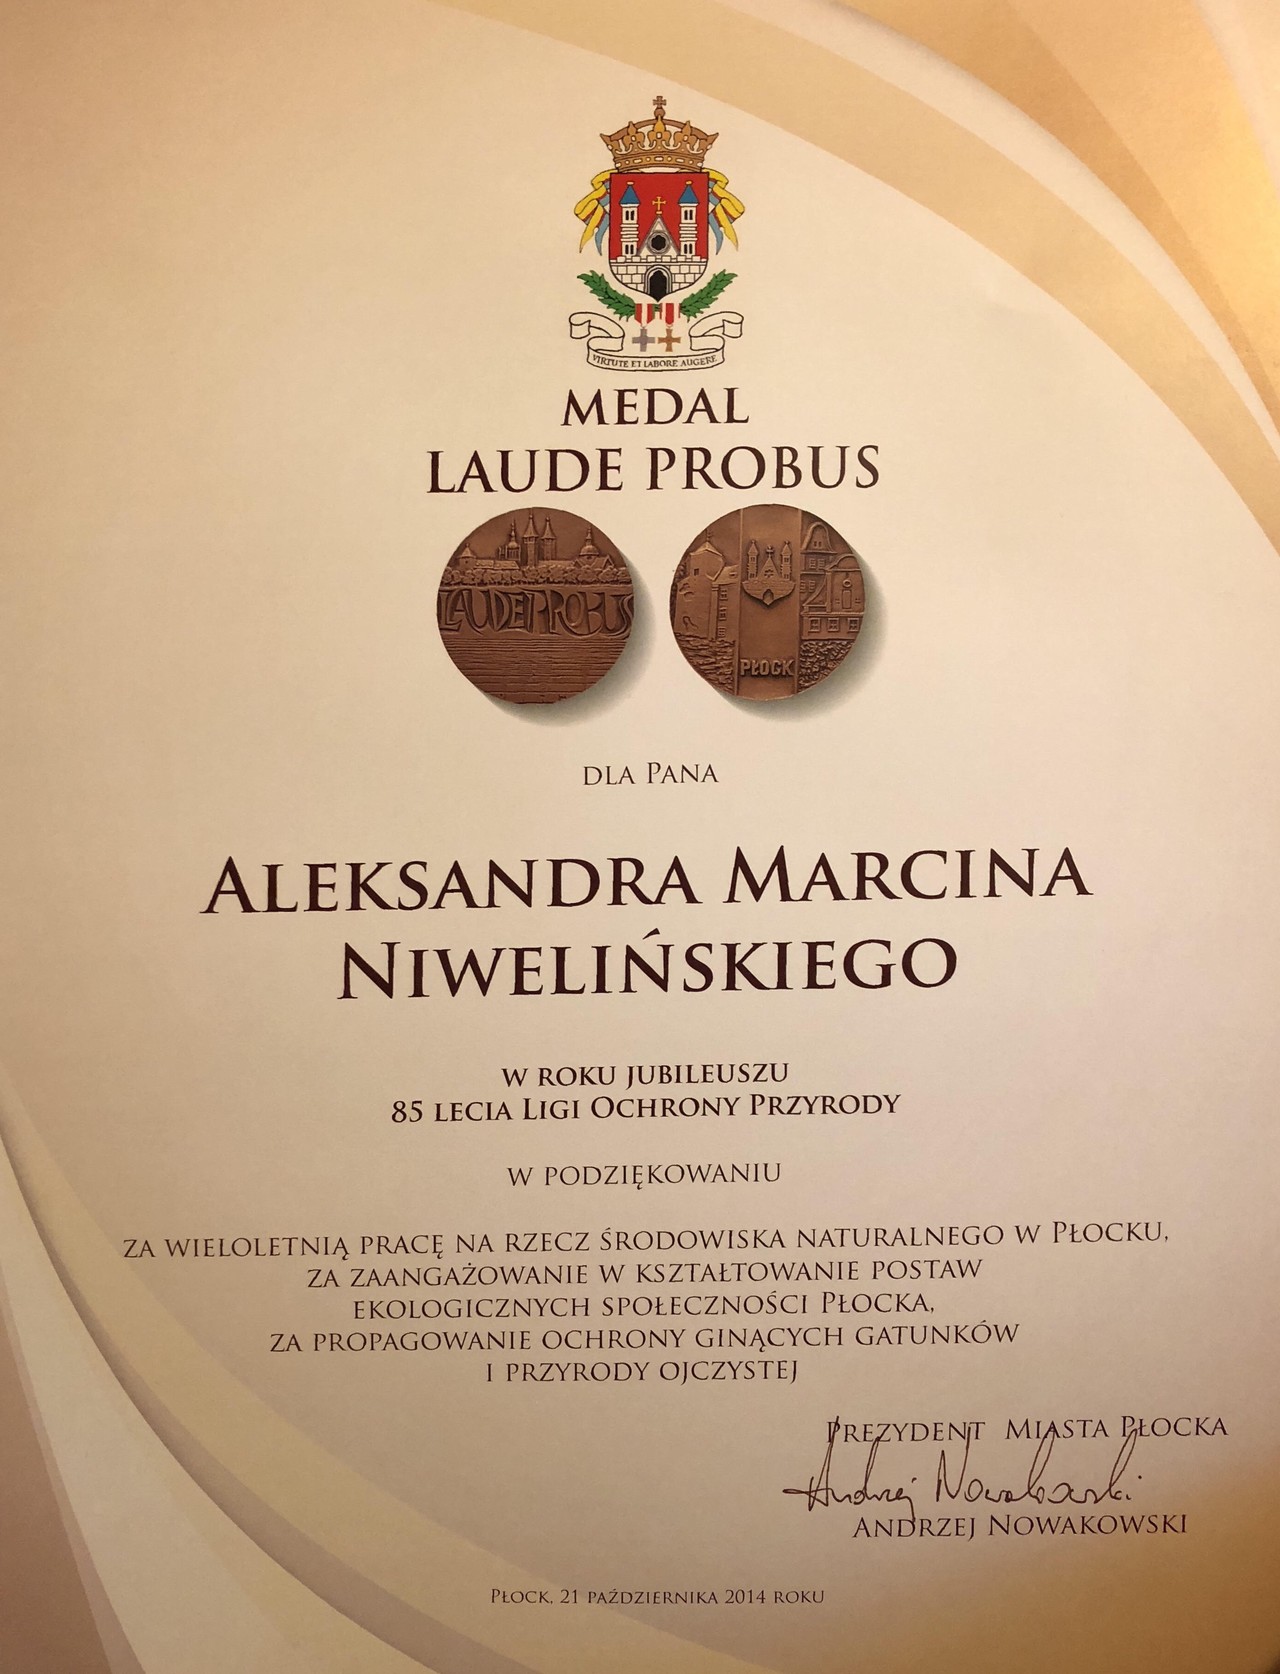 Laude Probus Medal